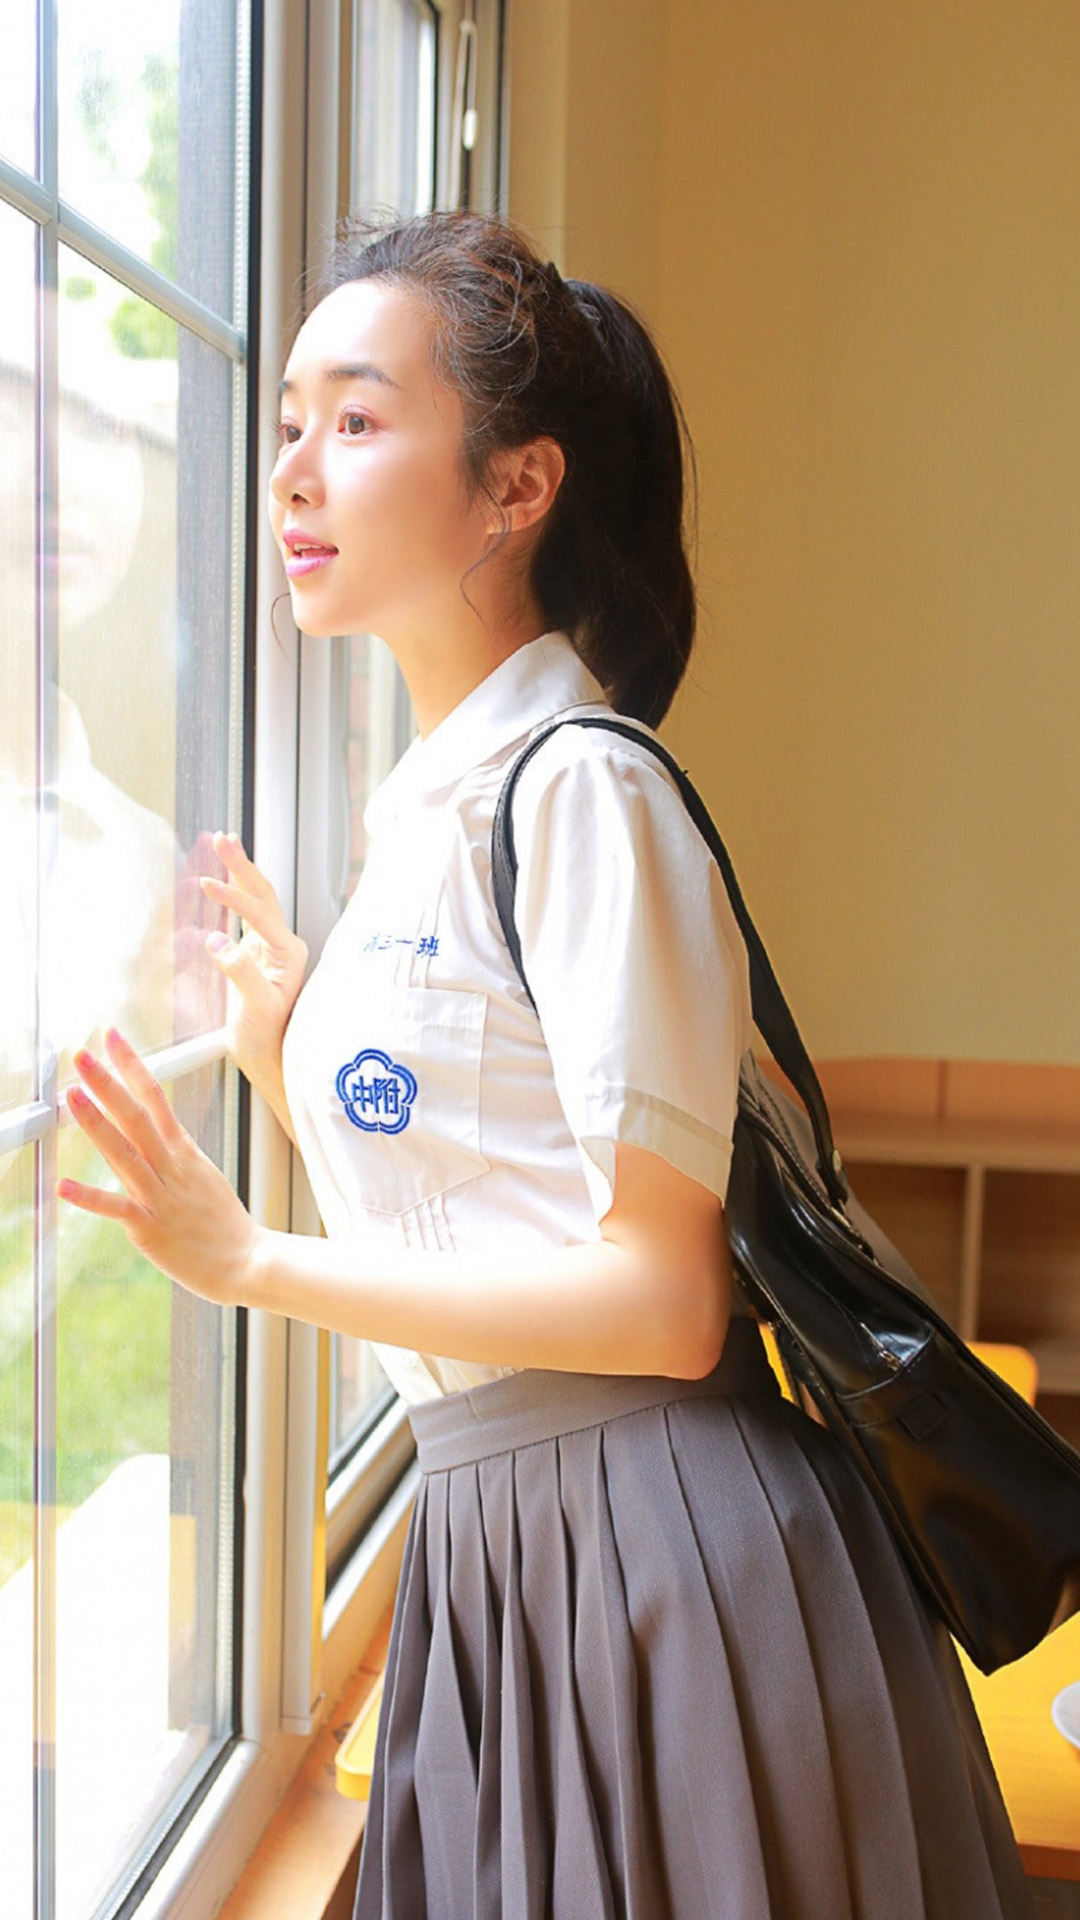 清纯美女学生制服短裙迷人写真手机壁纸